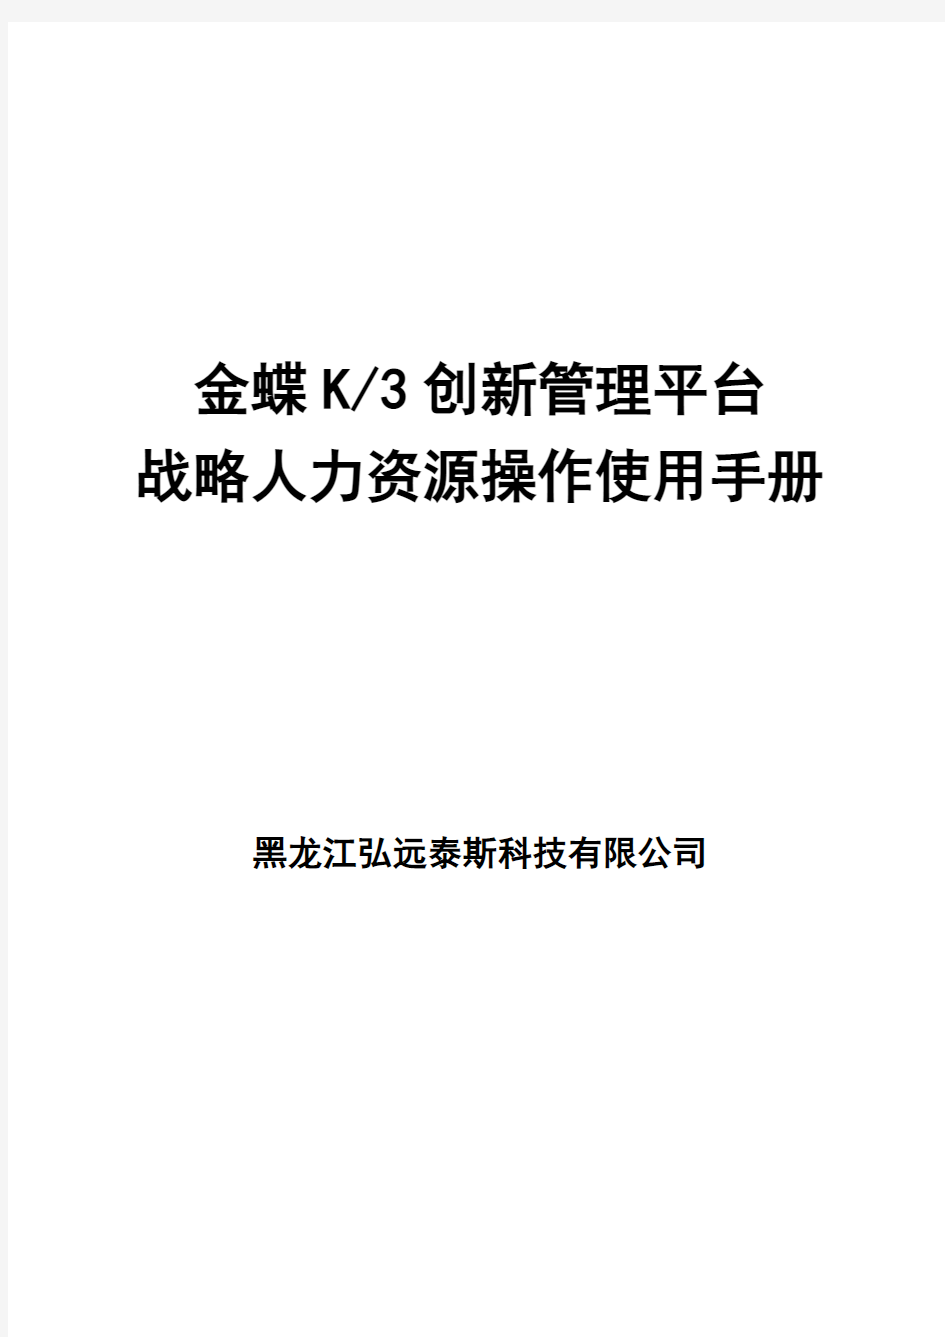 金蝶K3创新管理平台战略人力资源操作使用手册